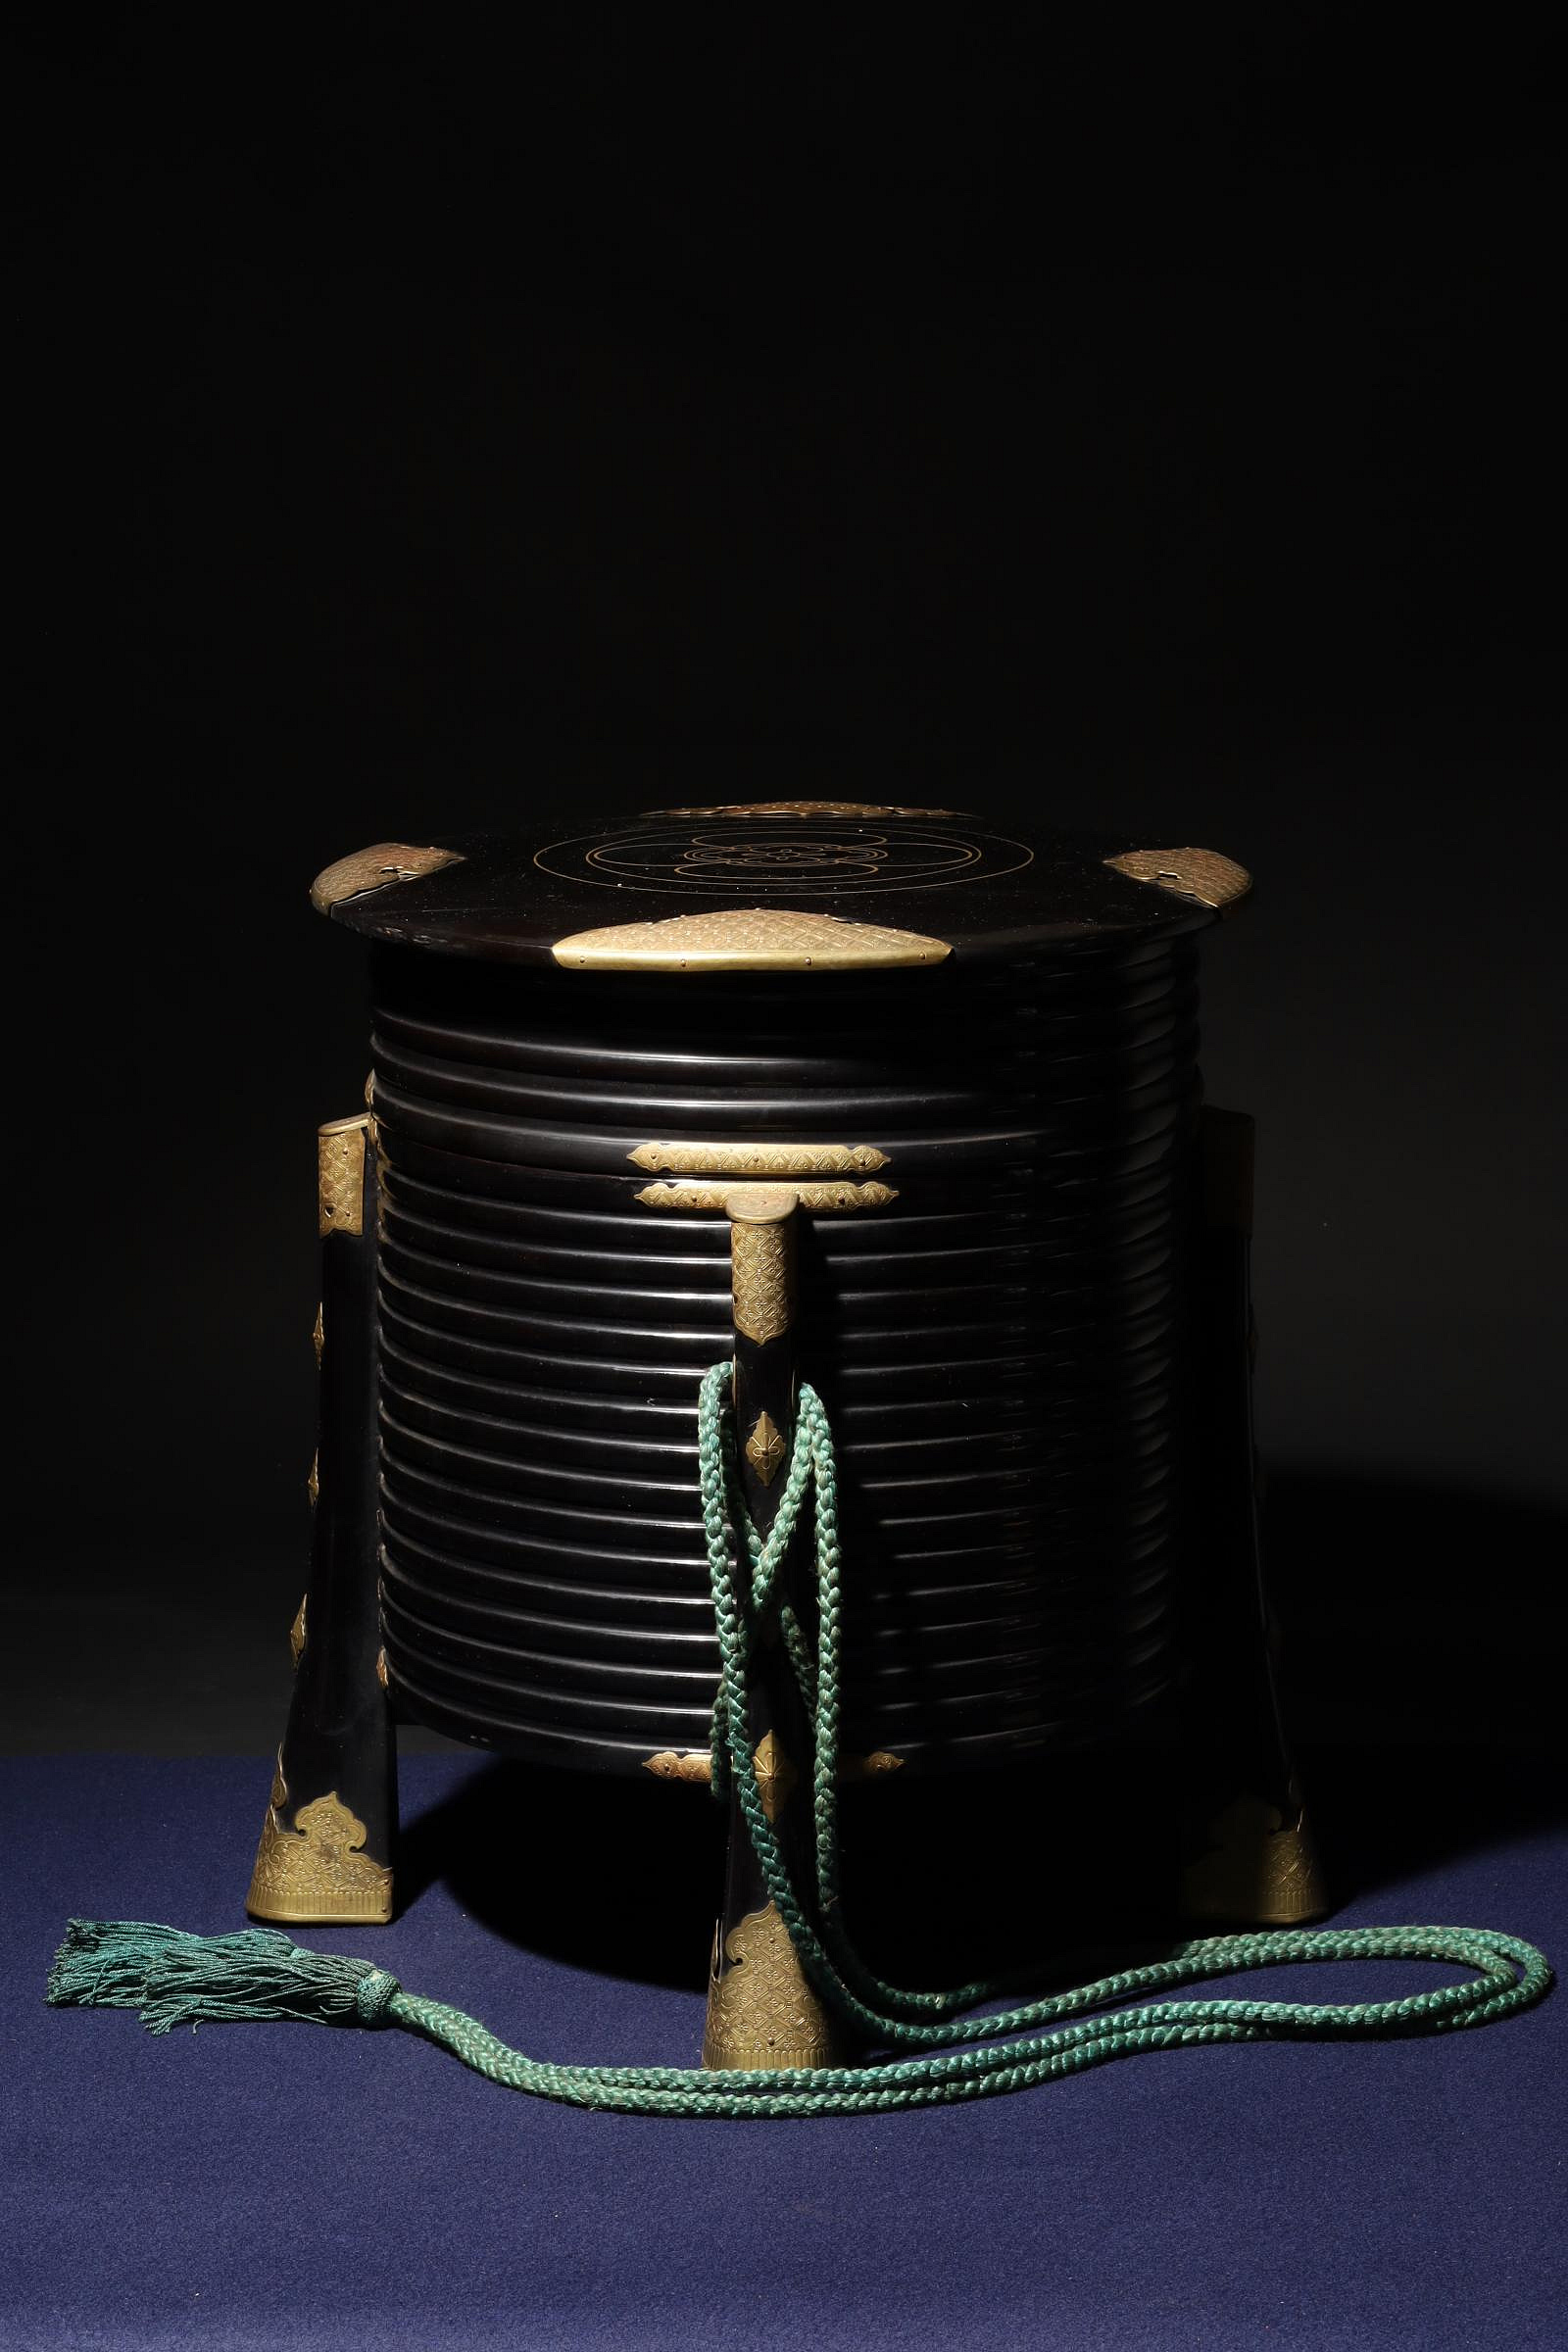 2/29結標日本木造漆塗金彩貝桶茶倉茶櫃C020854 –漆碗漆盤漆盒茶箱重箱 